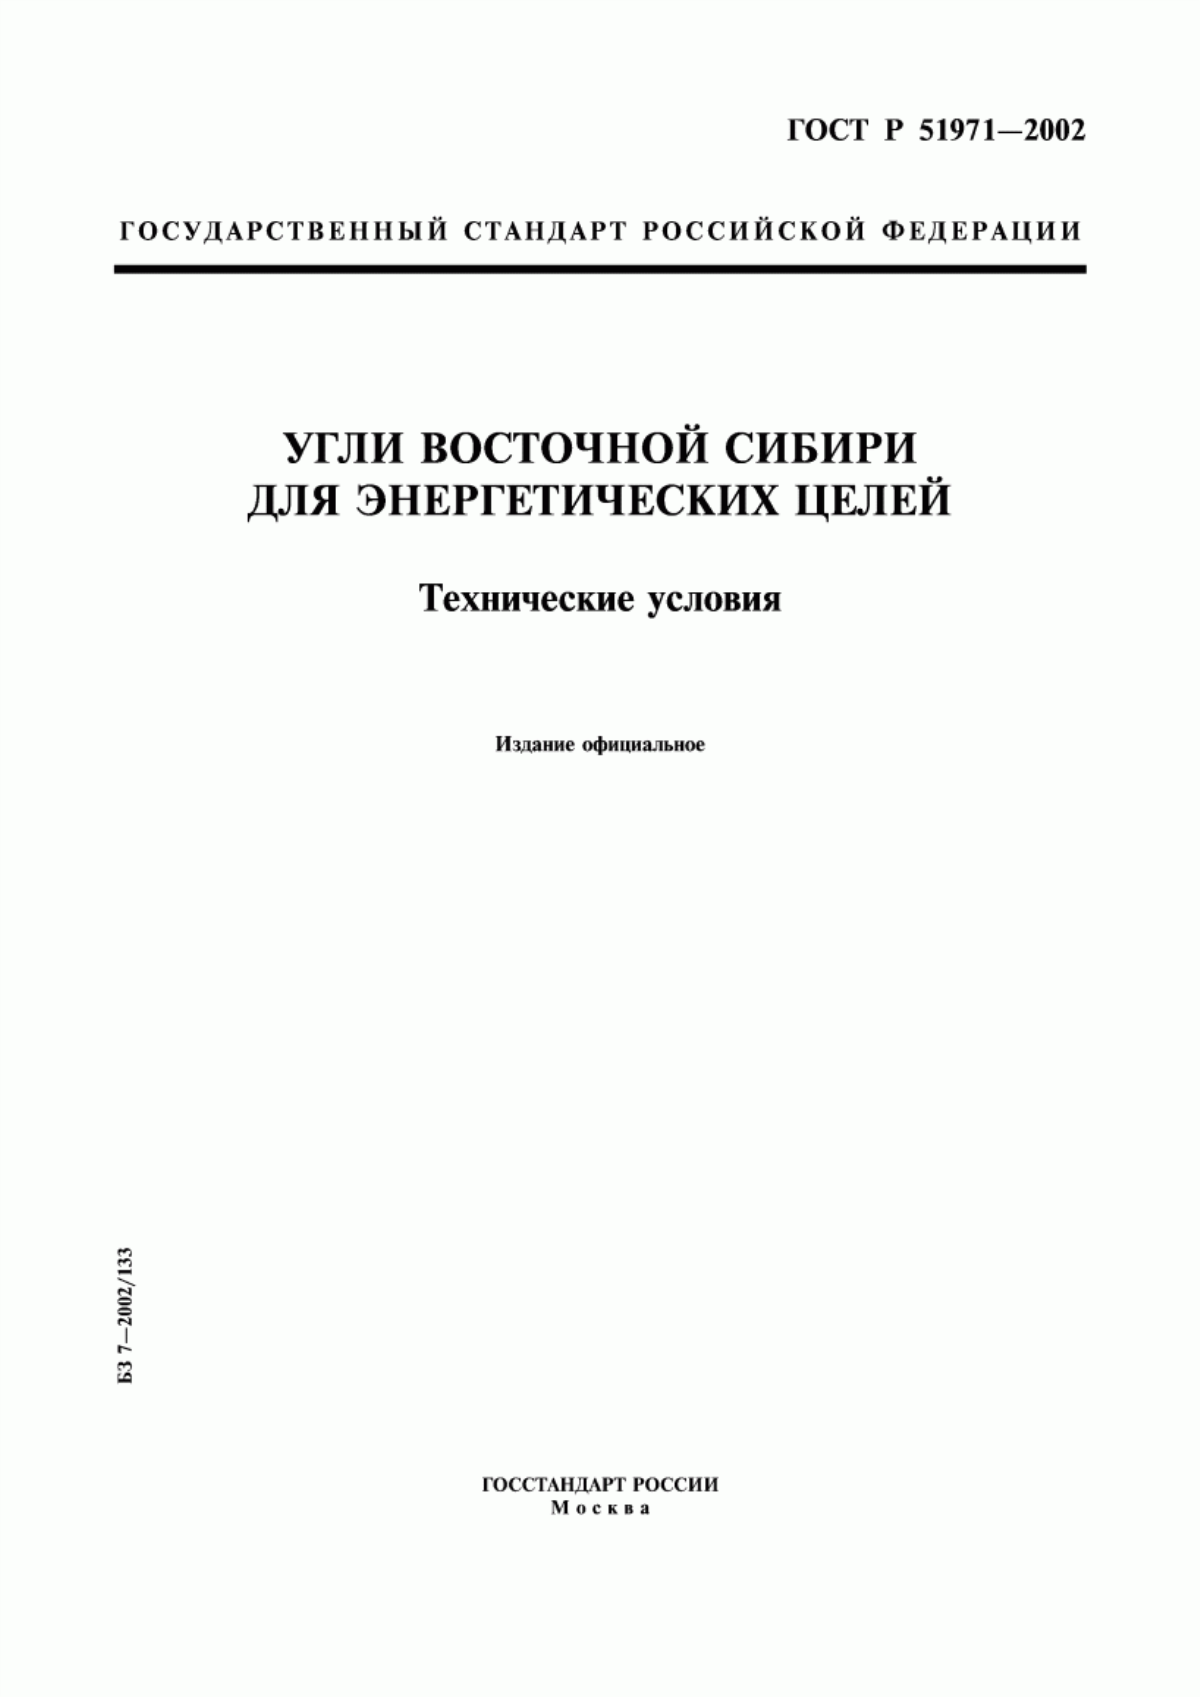 ГОСТ Р 51971-2002 Угли Восточной Сибири для энергетических целей. Технические условия